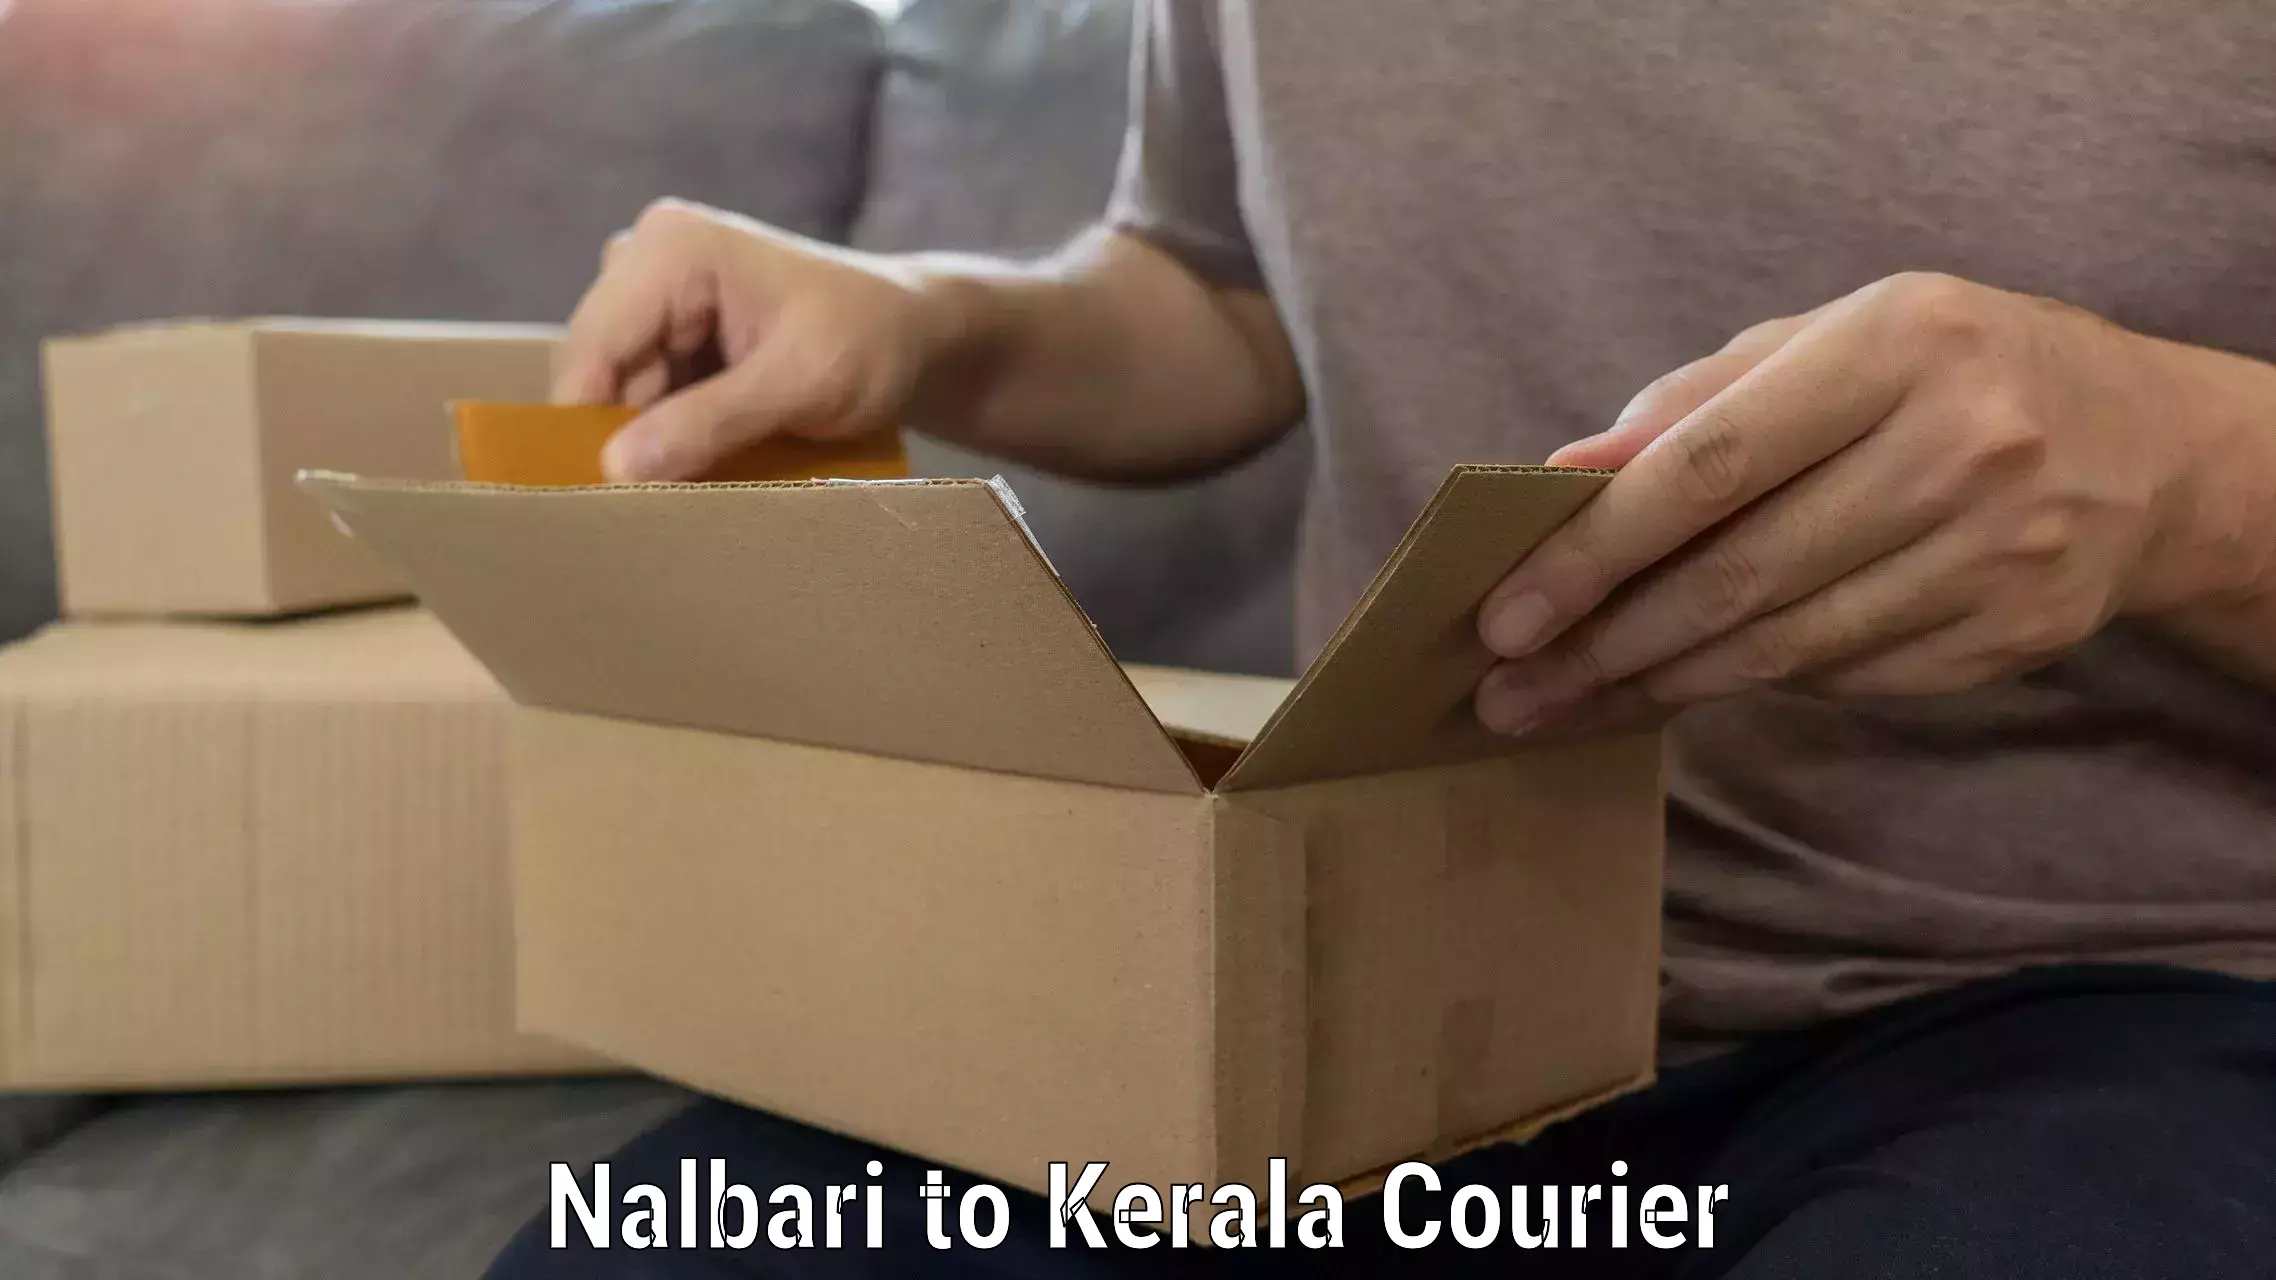 Moving and packing experts Nalbari to Kannapuram